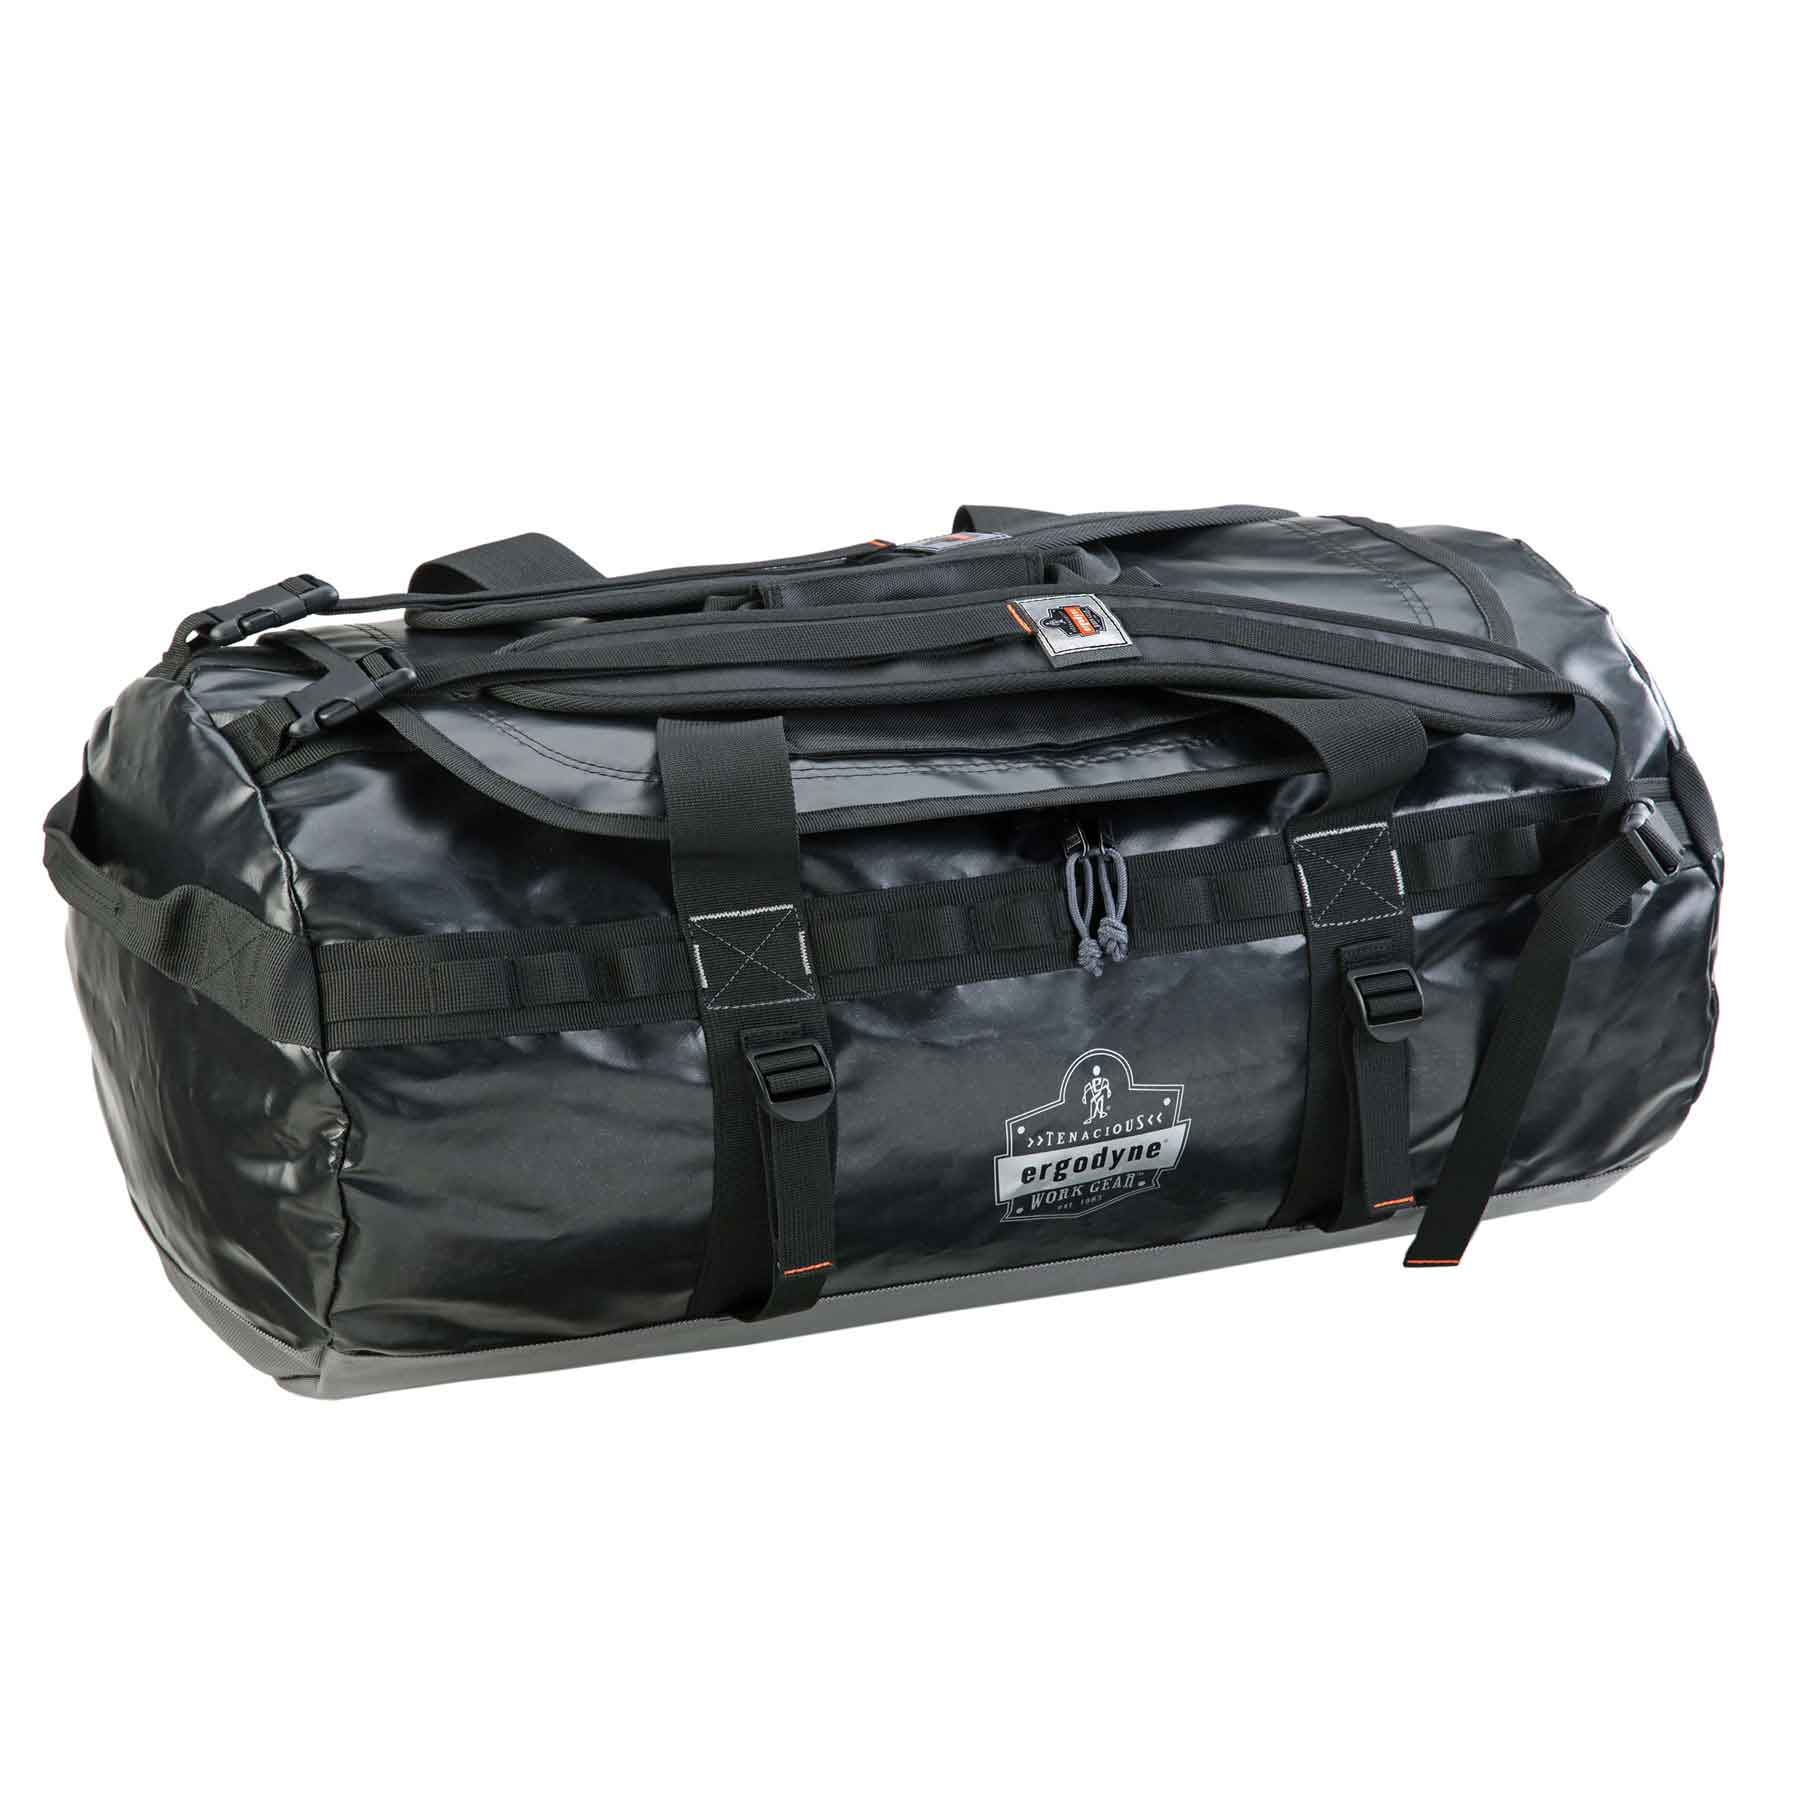 Ergodyne Arsenal® 5030 Water Resistant Duffel Bag